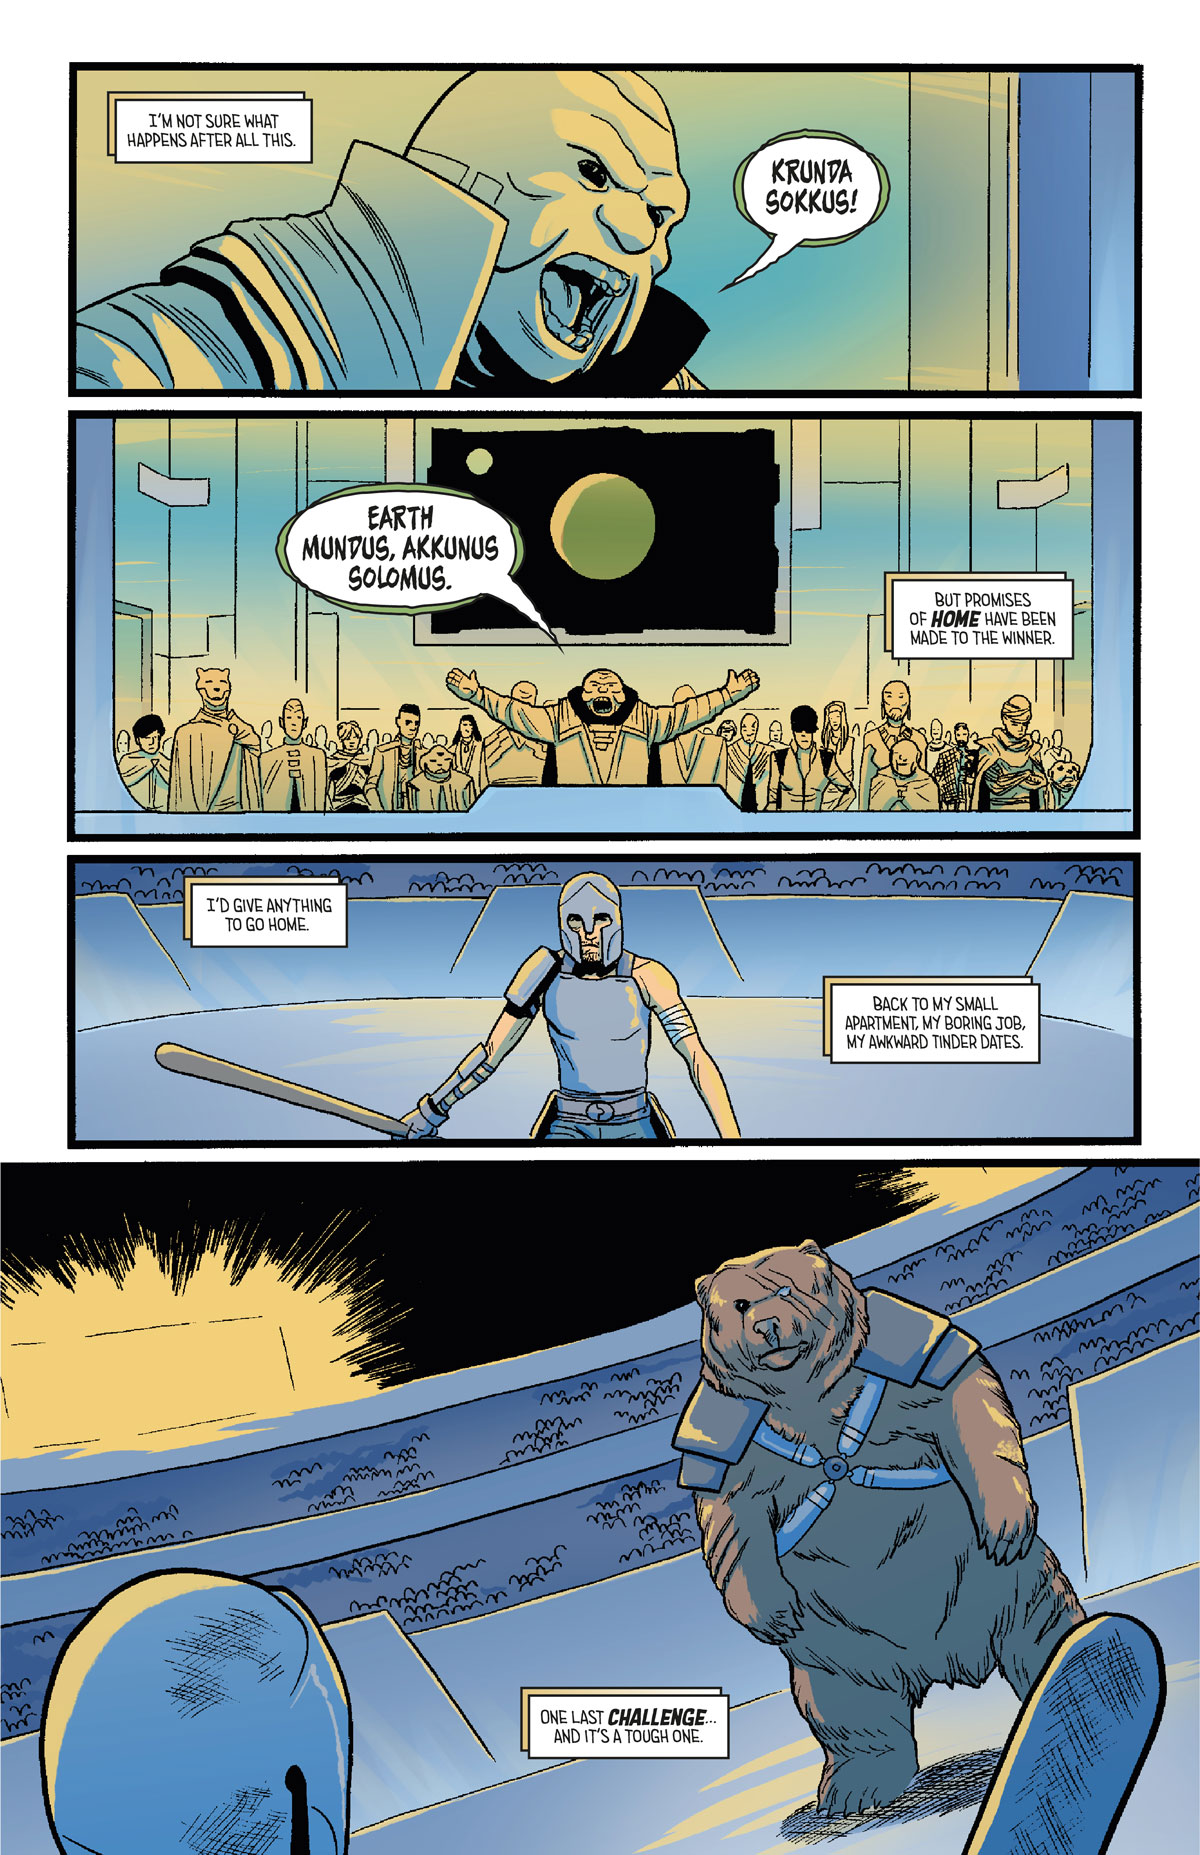 page 6 of noah's battleground